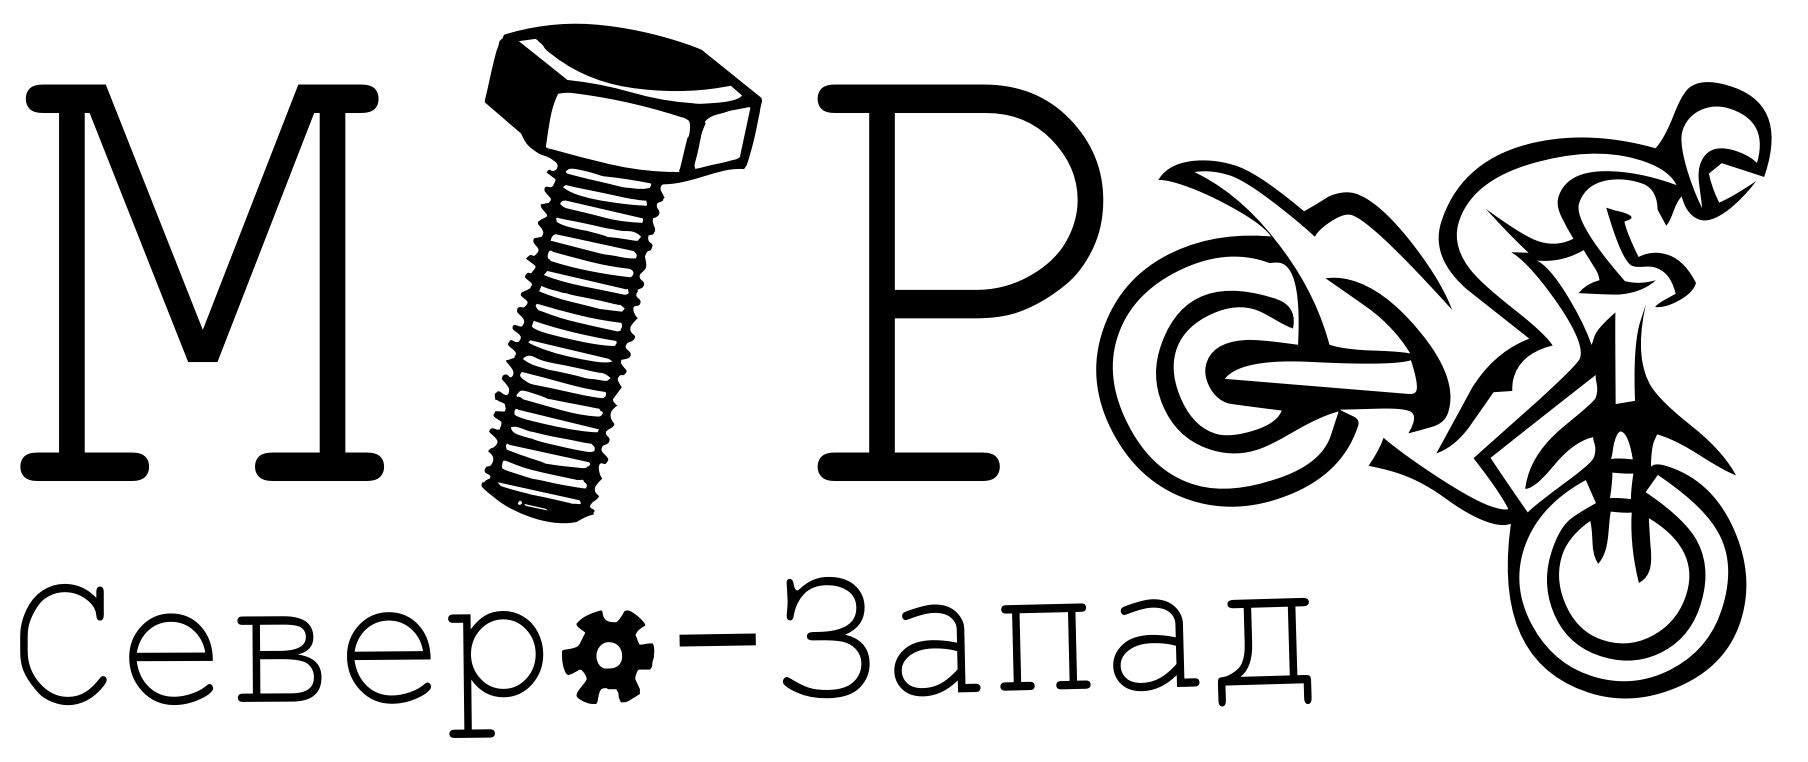 Редизайн лого (производство и продажа мототехники) - дизайнер BoBan4ikk